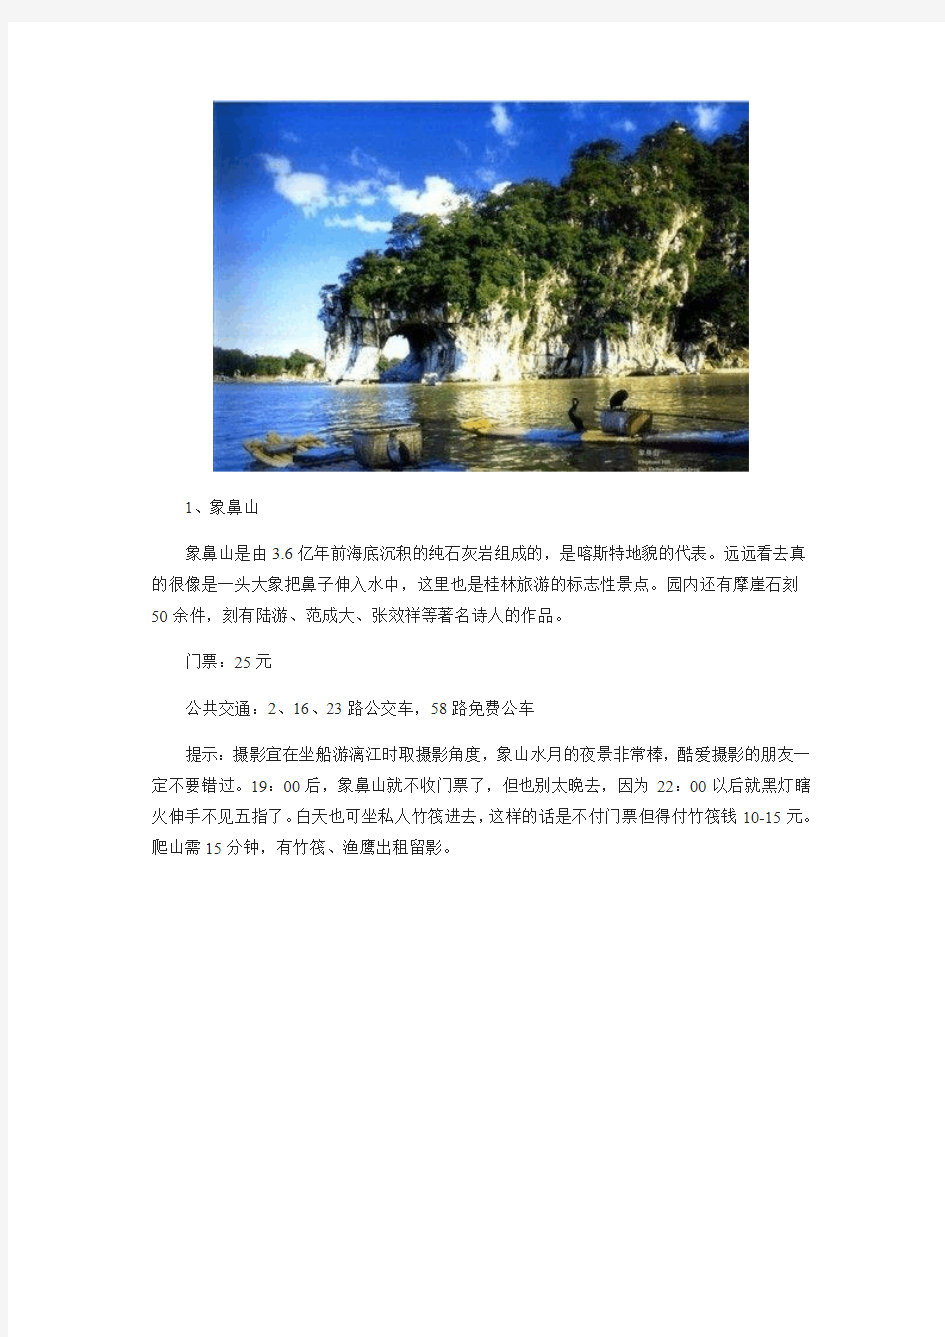 桂林是中国著名的旅游景点